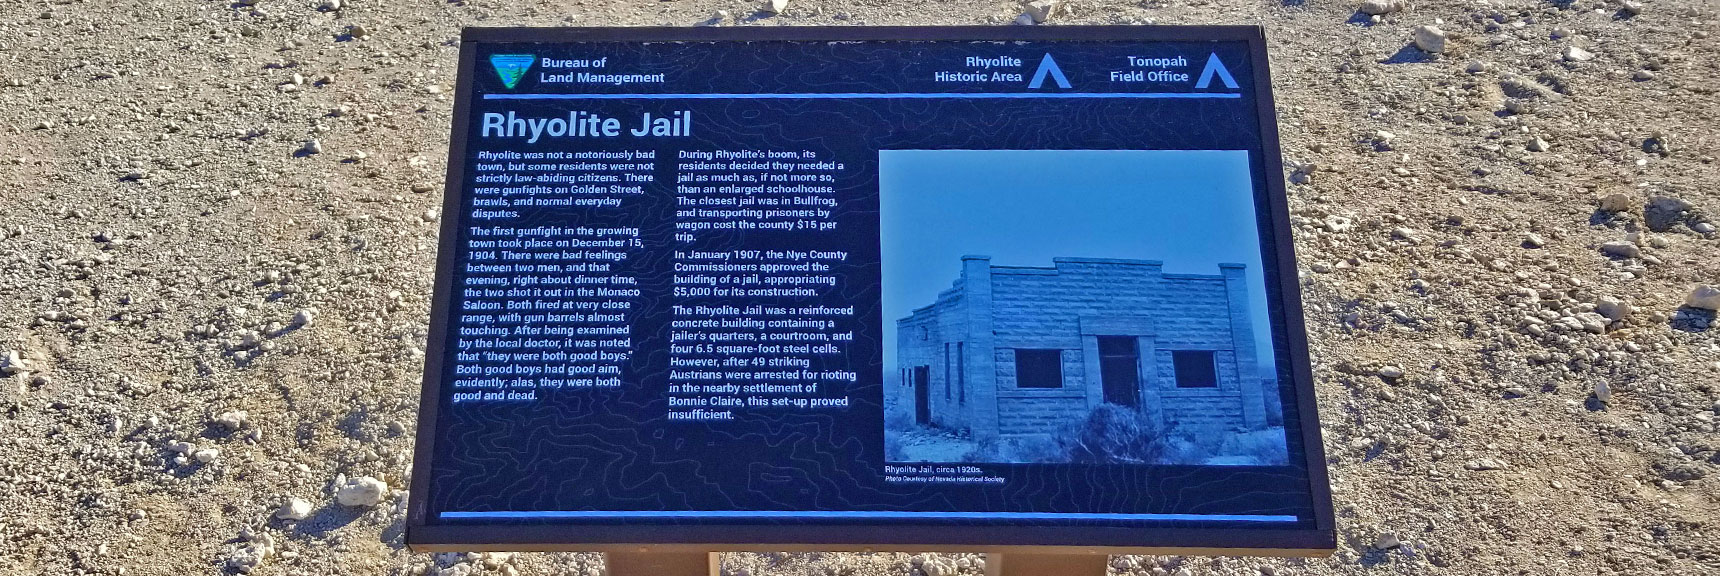 Rhyolite Jail Interpretive Sign | Rhyolite Ghost Town | Death Valley Area, Nevada